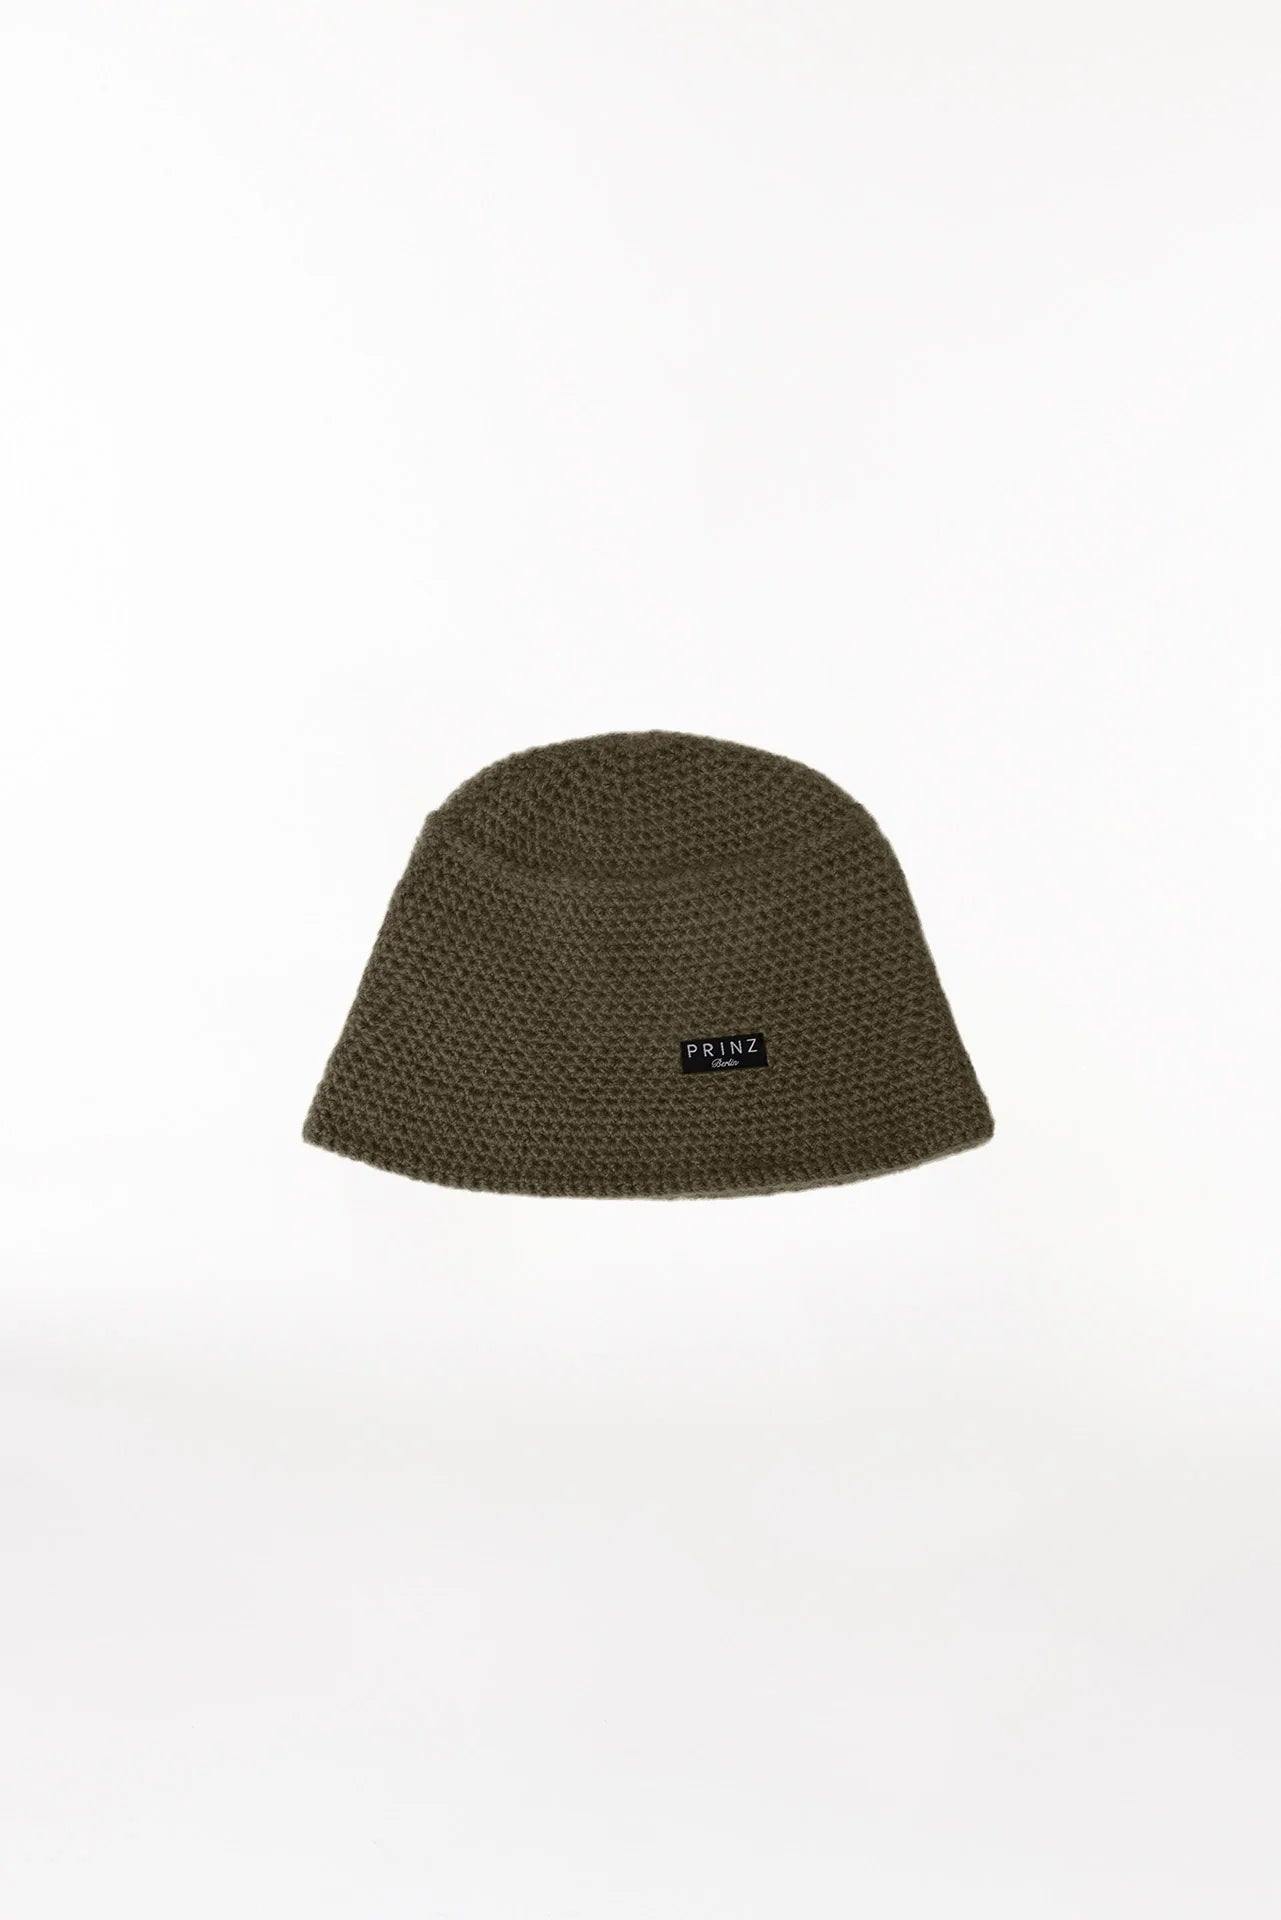 Grün, Bucket Hat - Lindner Fashion